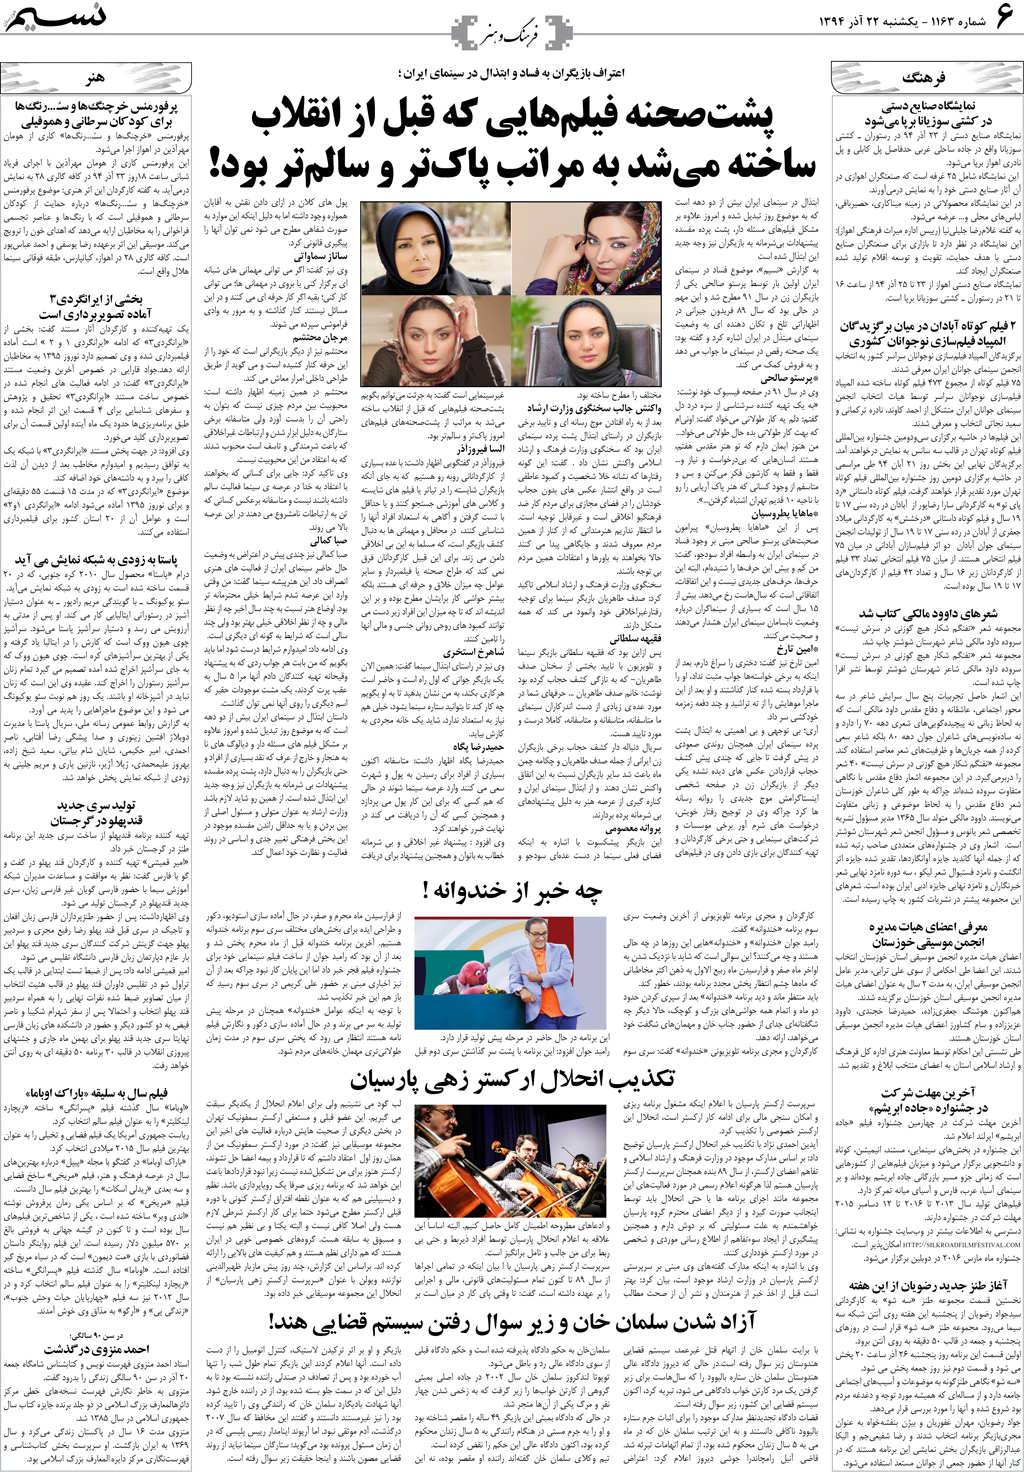 صفحه فرهنگ و هنر روزنامه نسیم شماره 1163